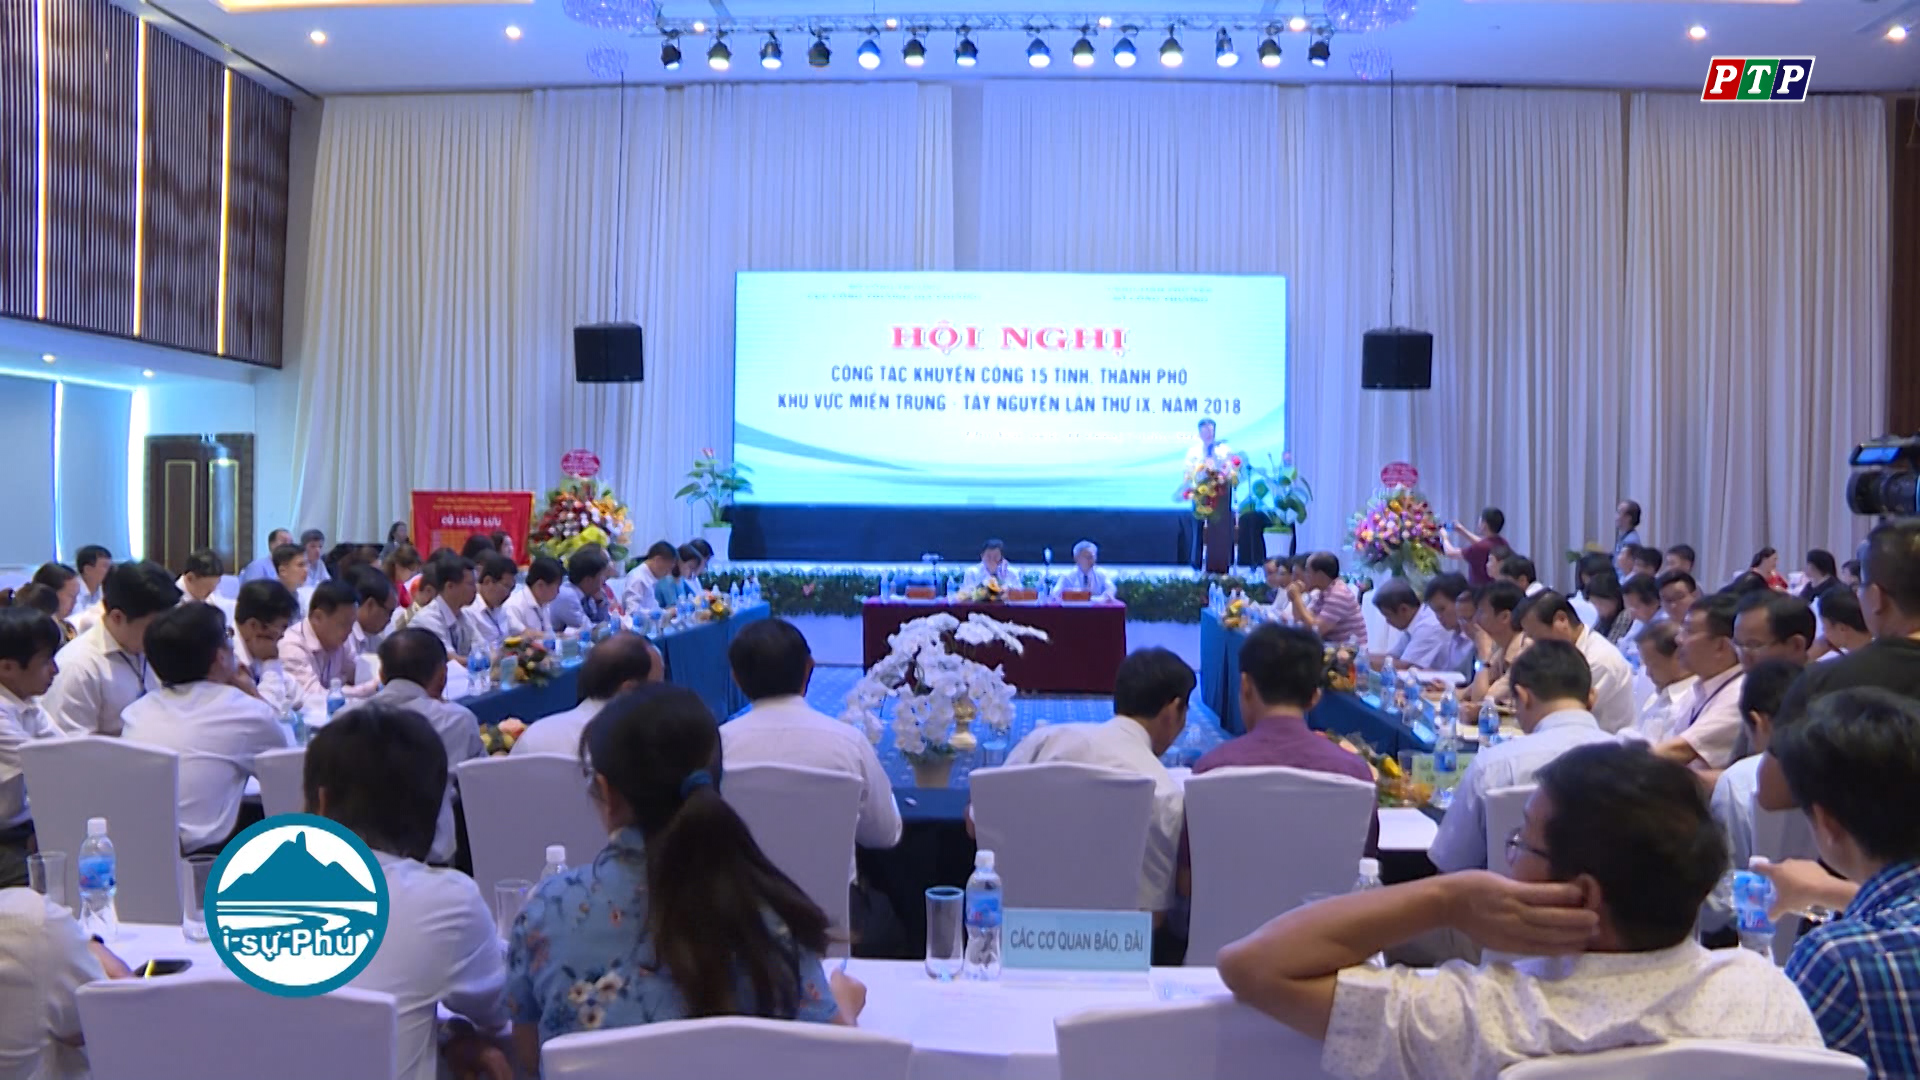 Hội nghị kết nối cung- cầu hàng Việt Nam Phú Yên năm 2018